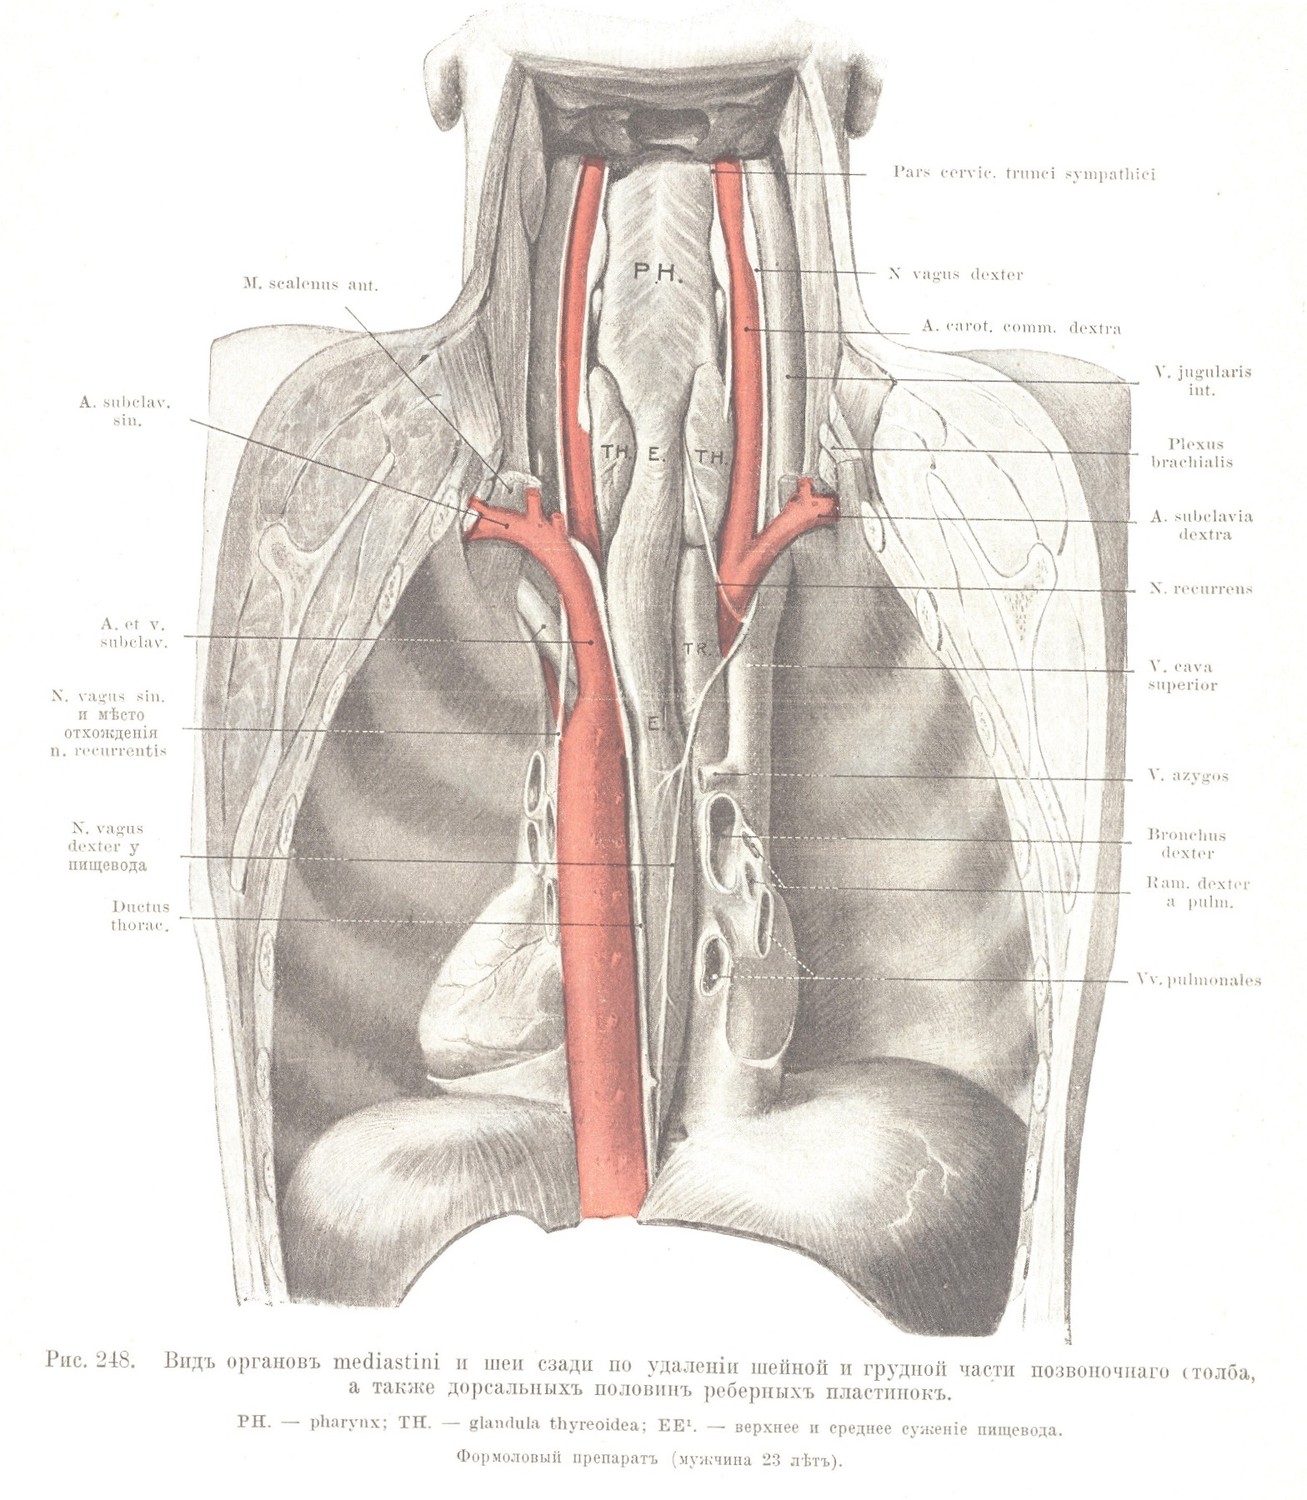 Видъ органовъ mediastini и шеи сзади по удаленіи шейной и грудной части позвоночнаго столба, а также дорсальныхъ половинъ реберныхъ пластинокъ.